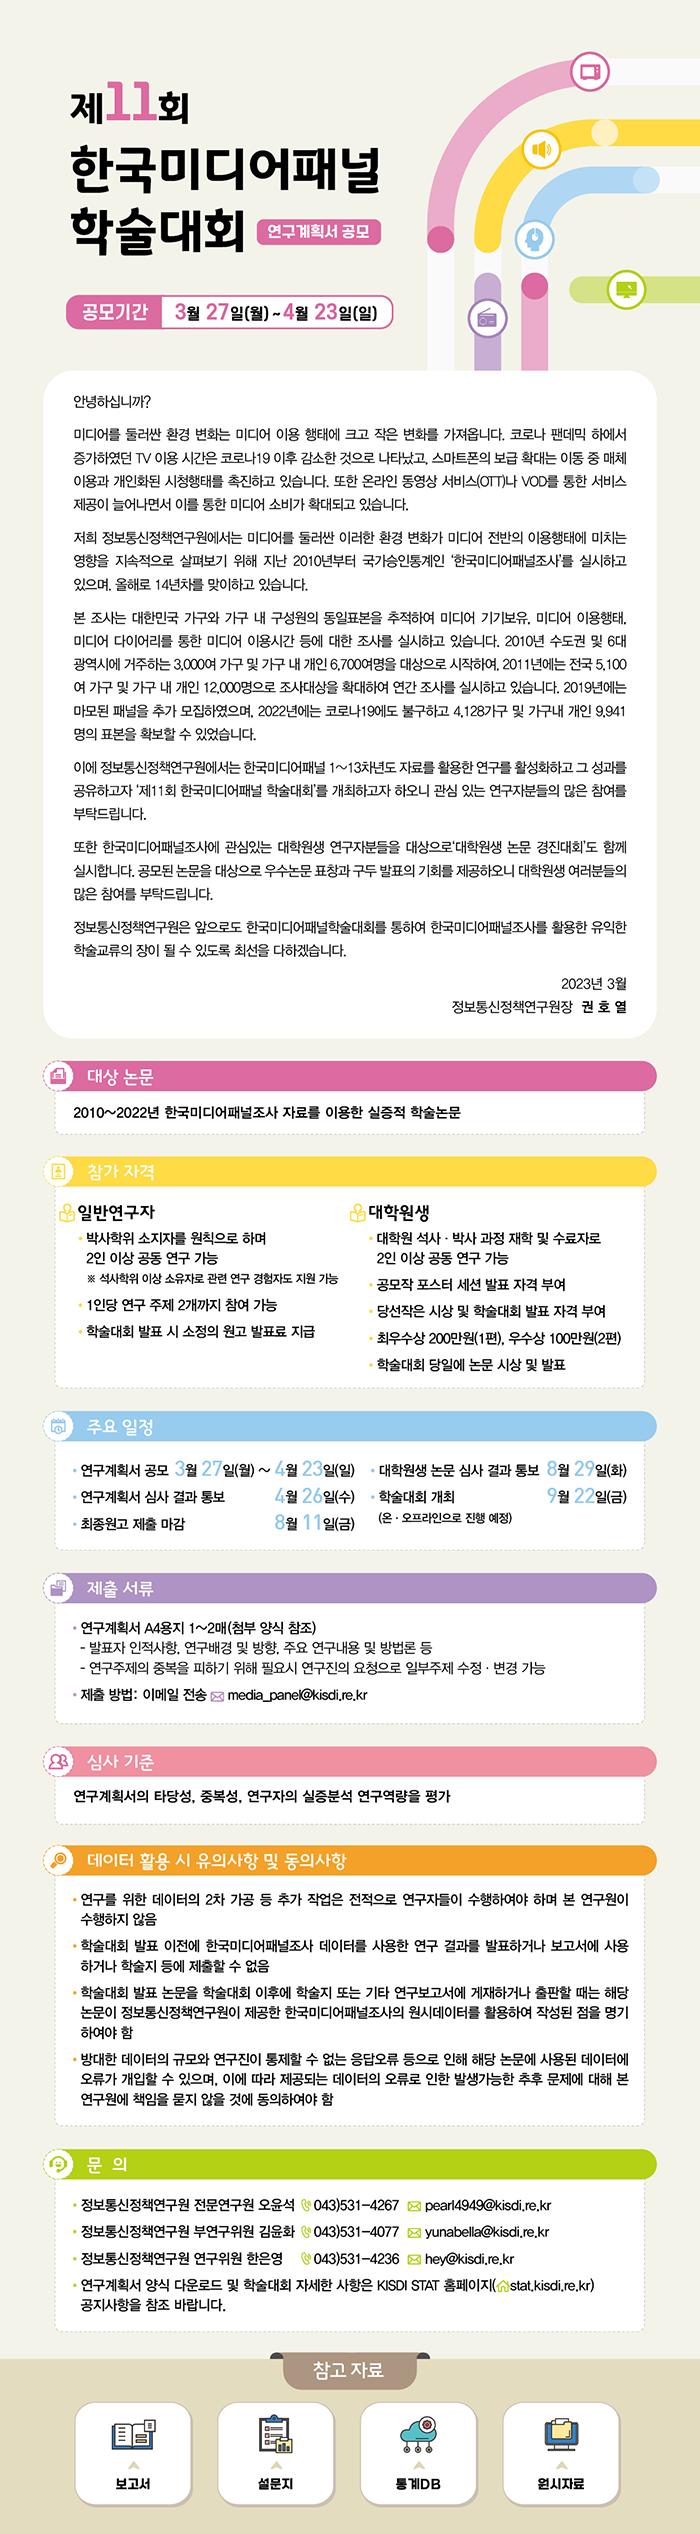 제11회 한국미디어패널 학술대회 연구계획서 공모 안내 포스터(하단 내용 참조)